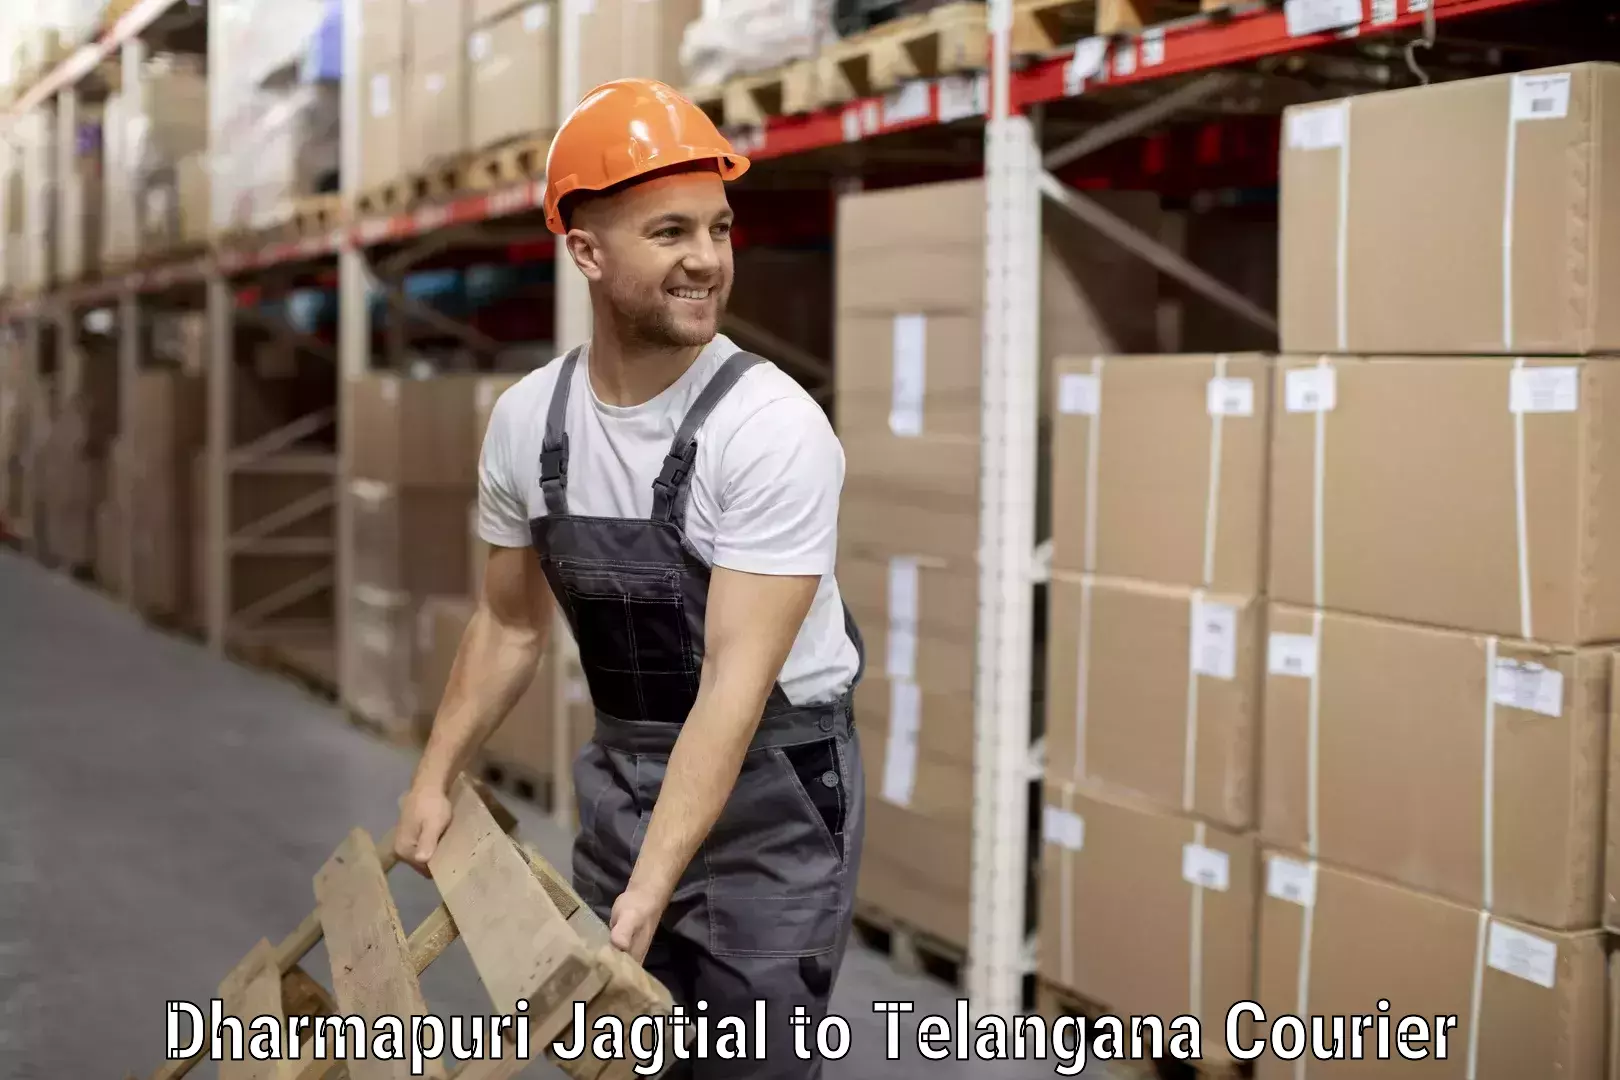 Baggage delivery optimization in Dharmapuri Jagtial to Sangareddy